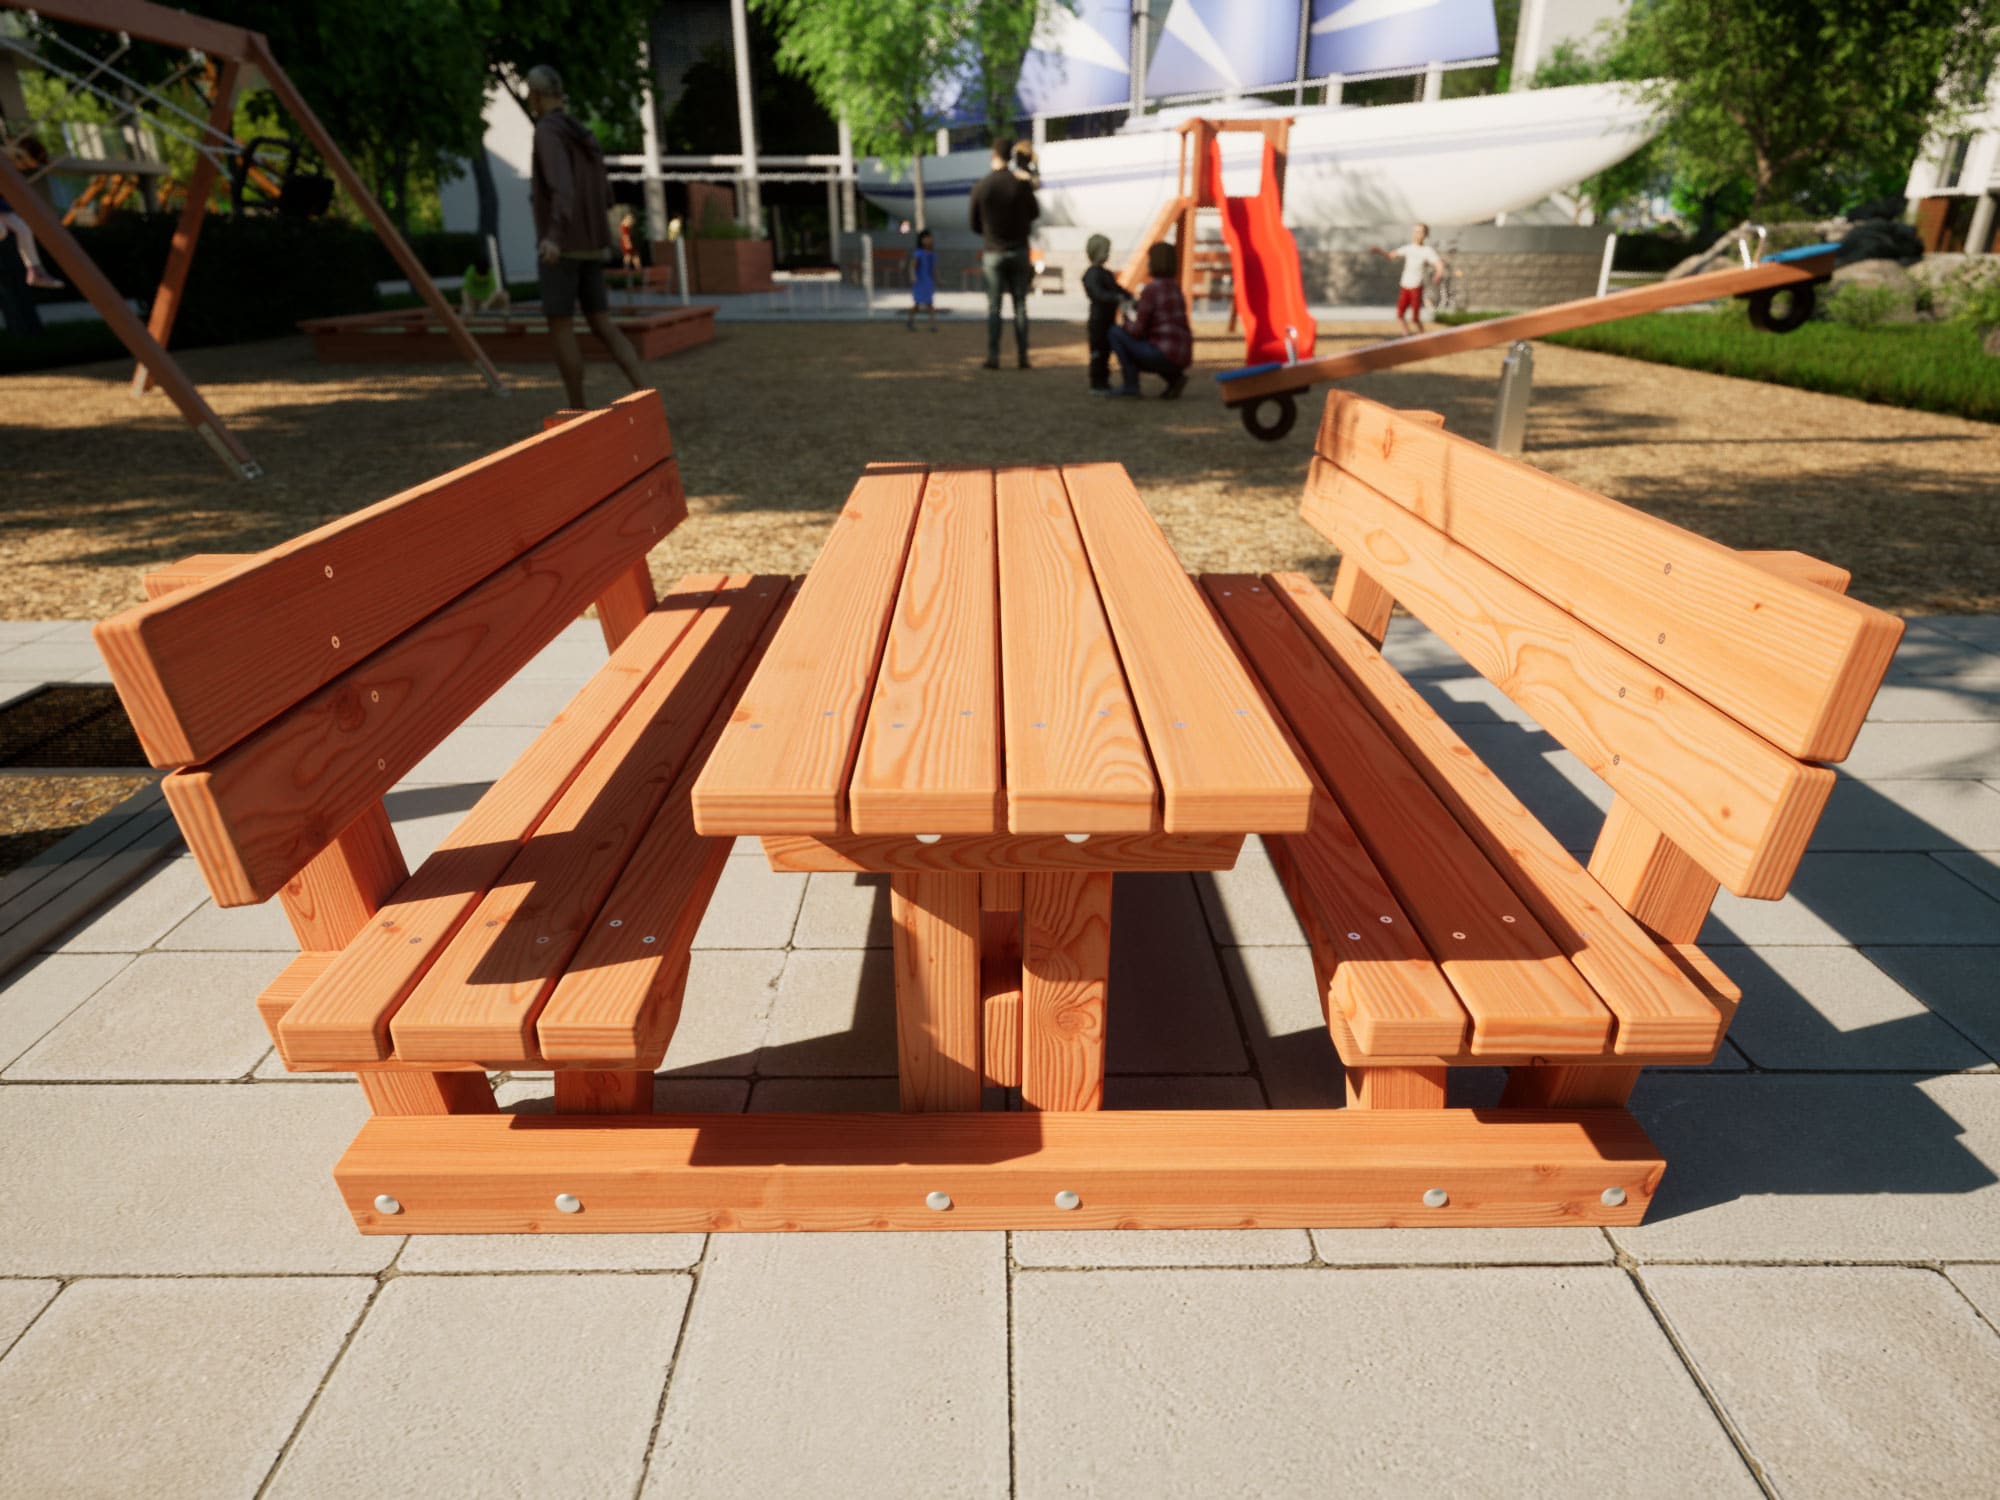 Tischbankkombination mit Lehne aus Lärchenholz in Kindergröße vor einem Spielplatz